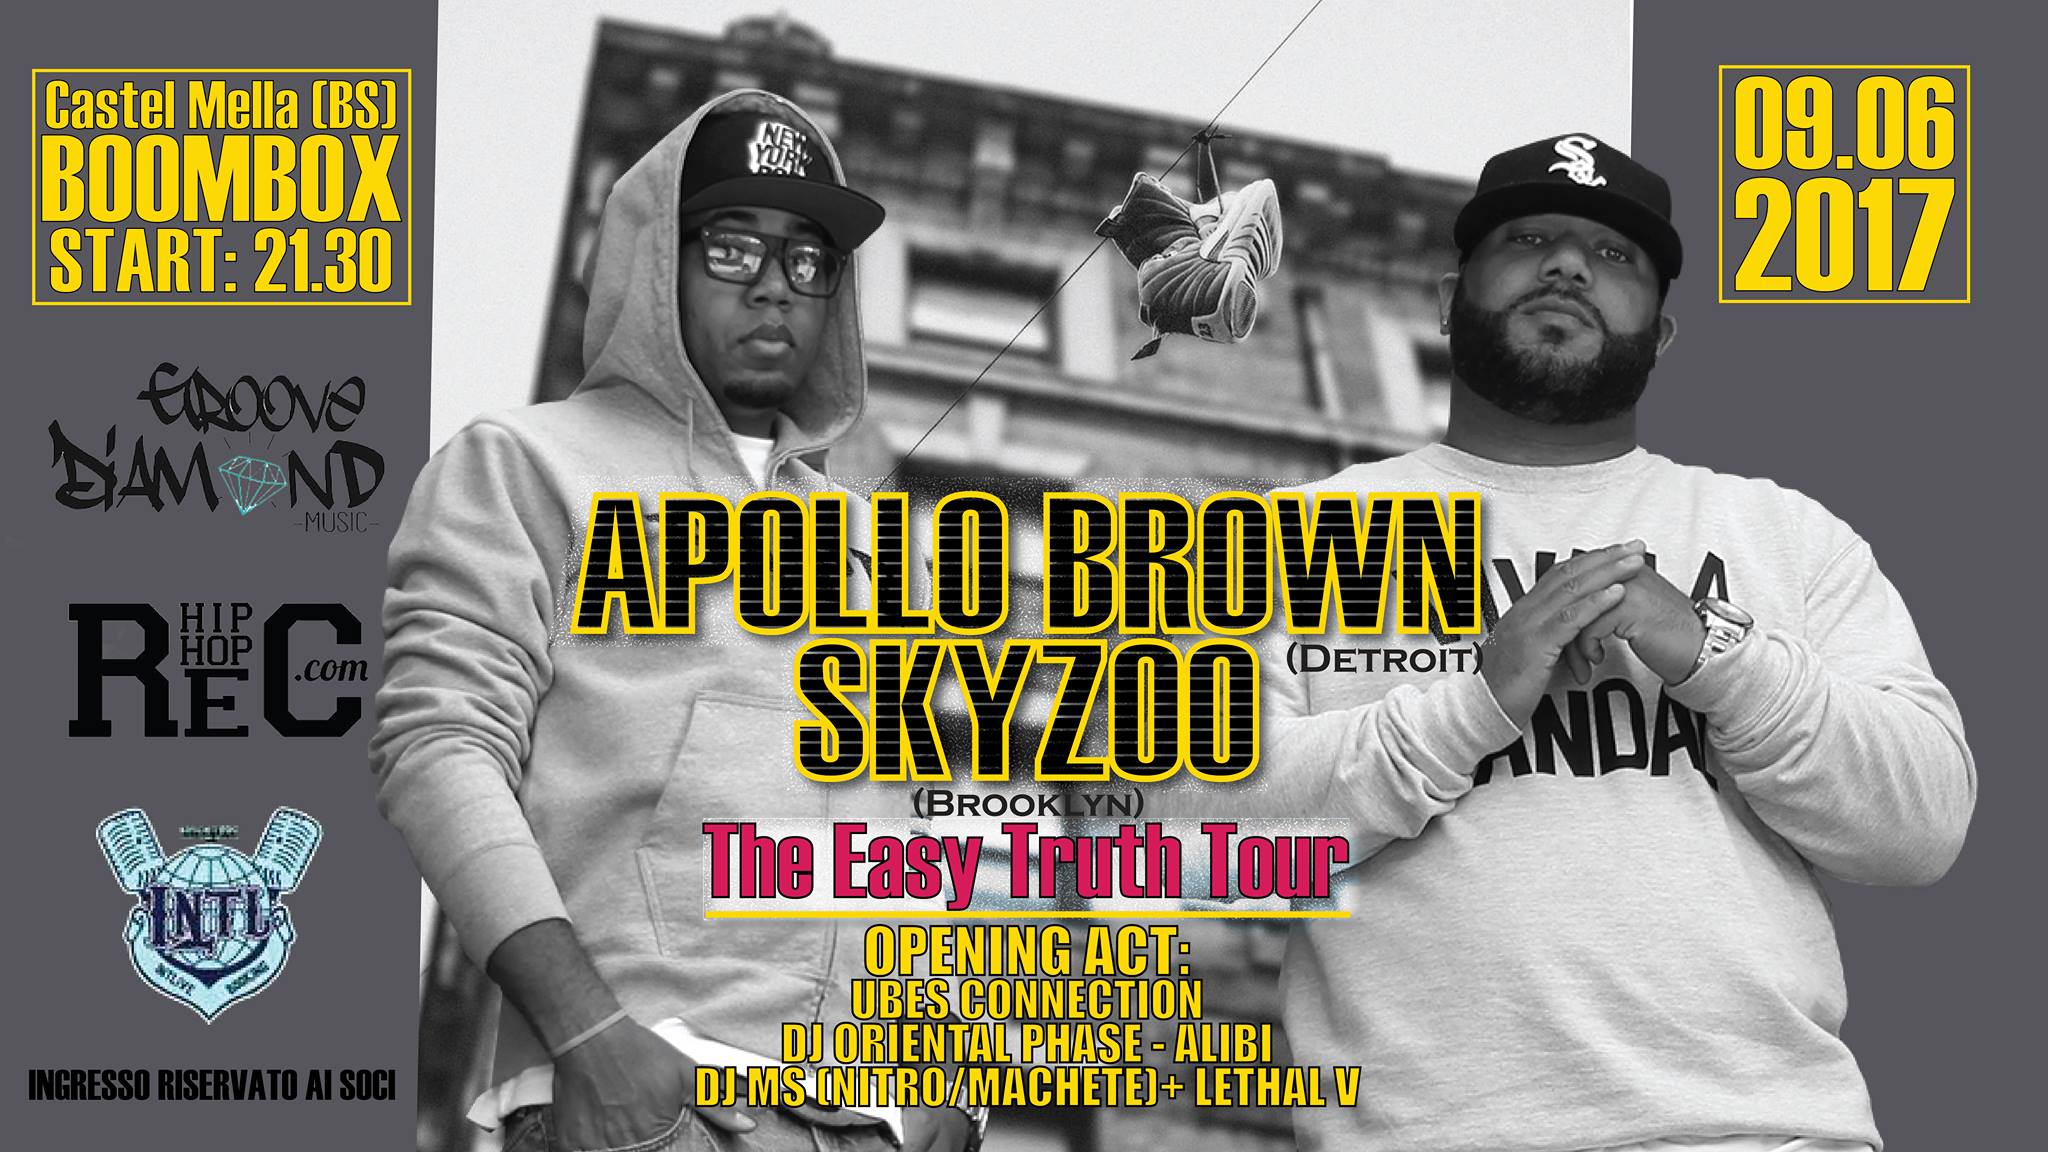 Apollo_Brown_Skyzoo_brescia_boombox